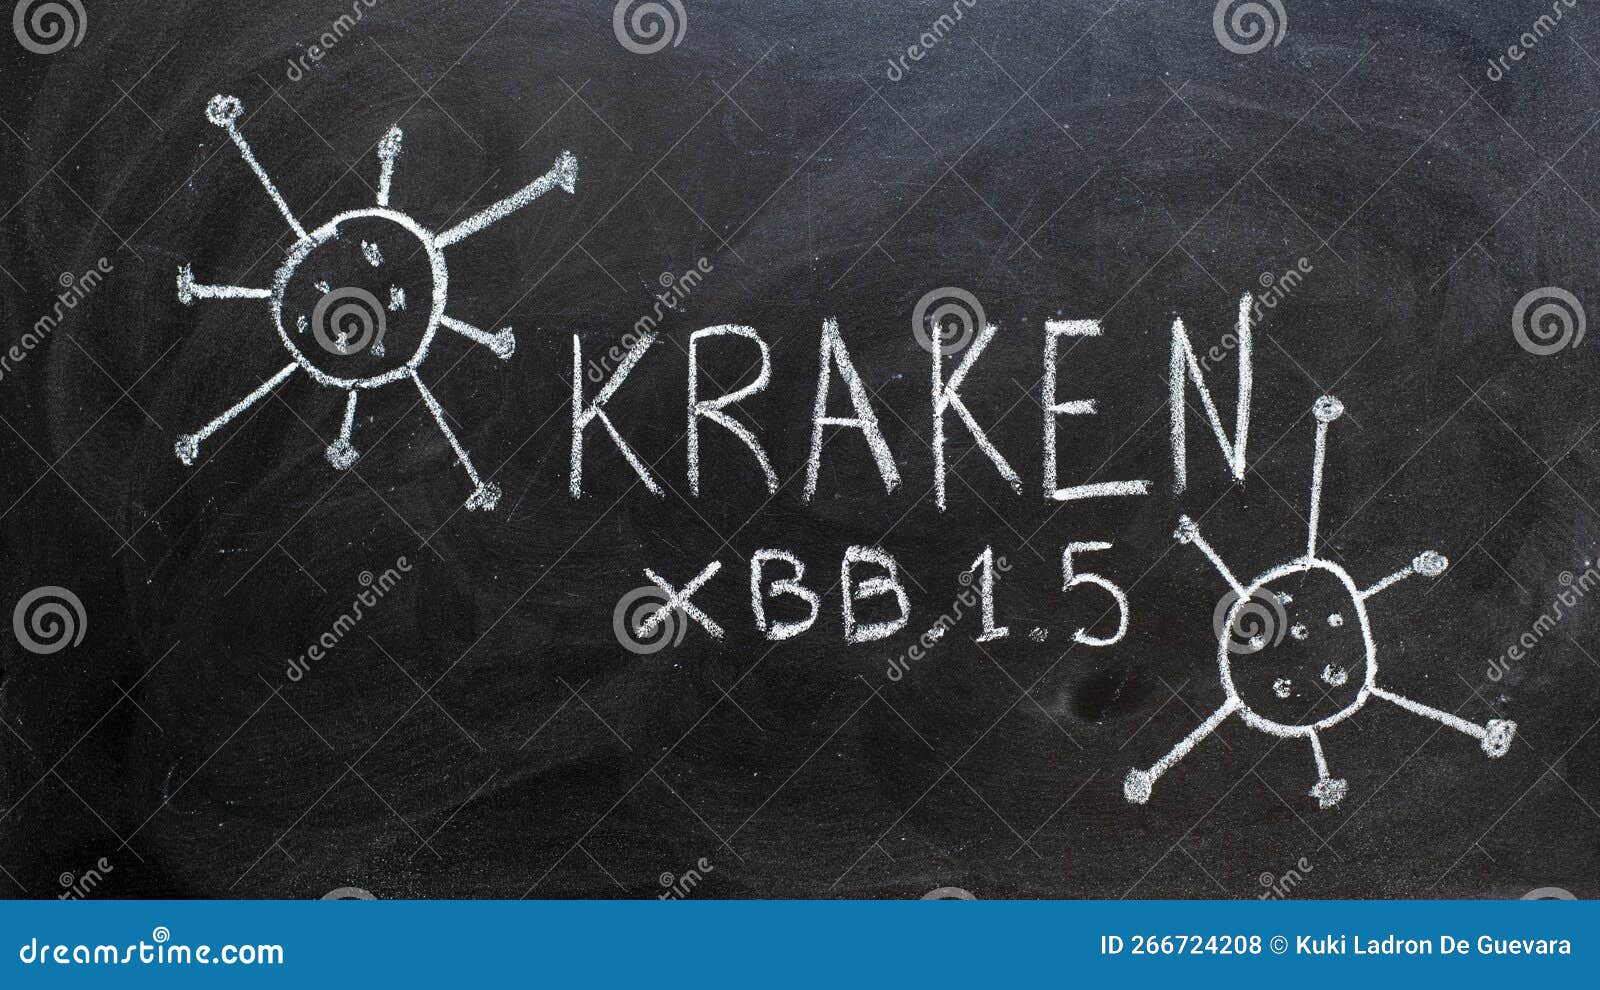 kraken, new variant of covid 19, written on a blackboard